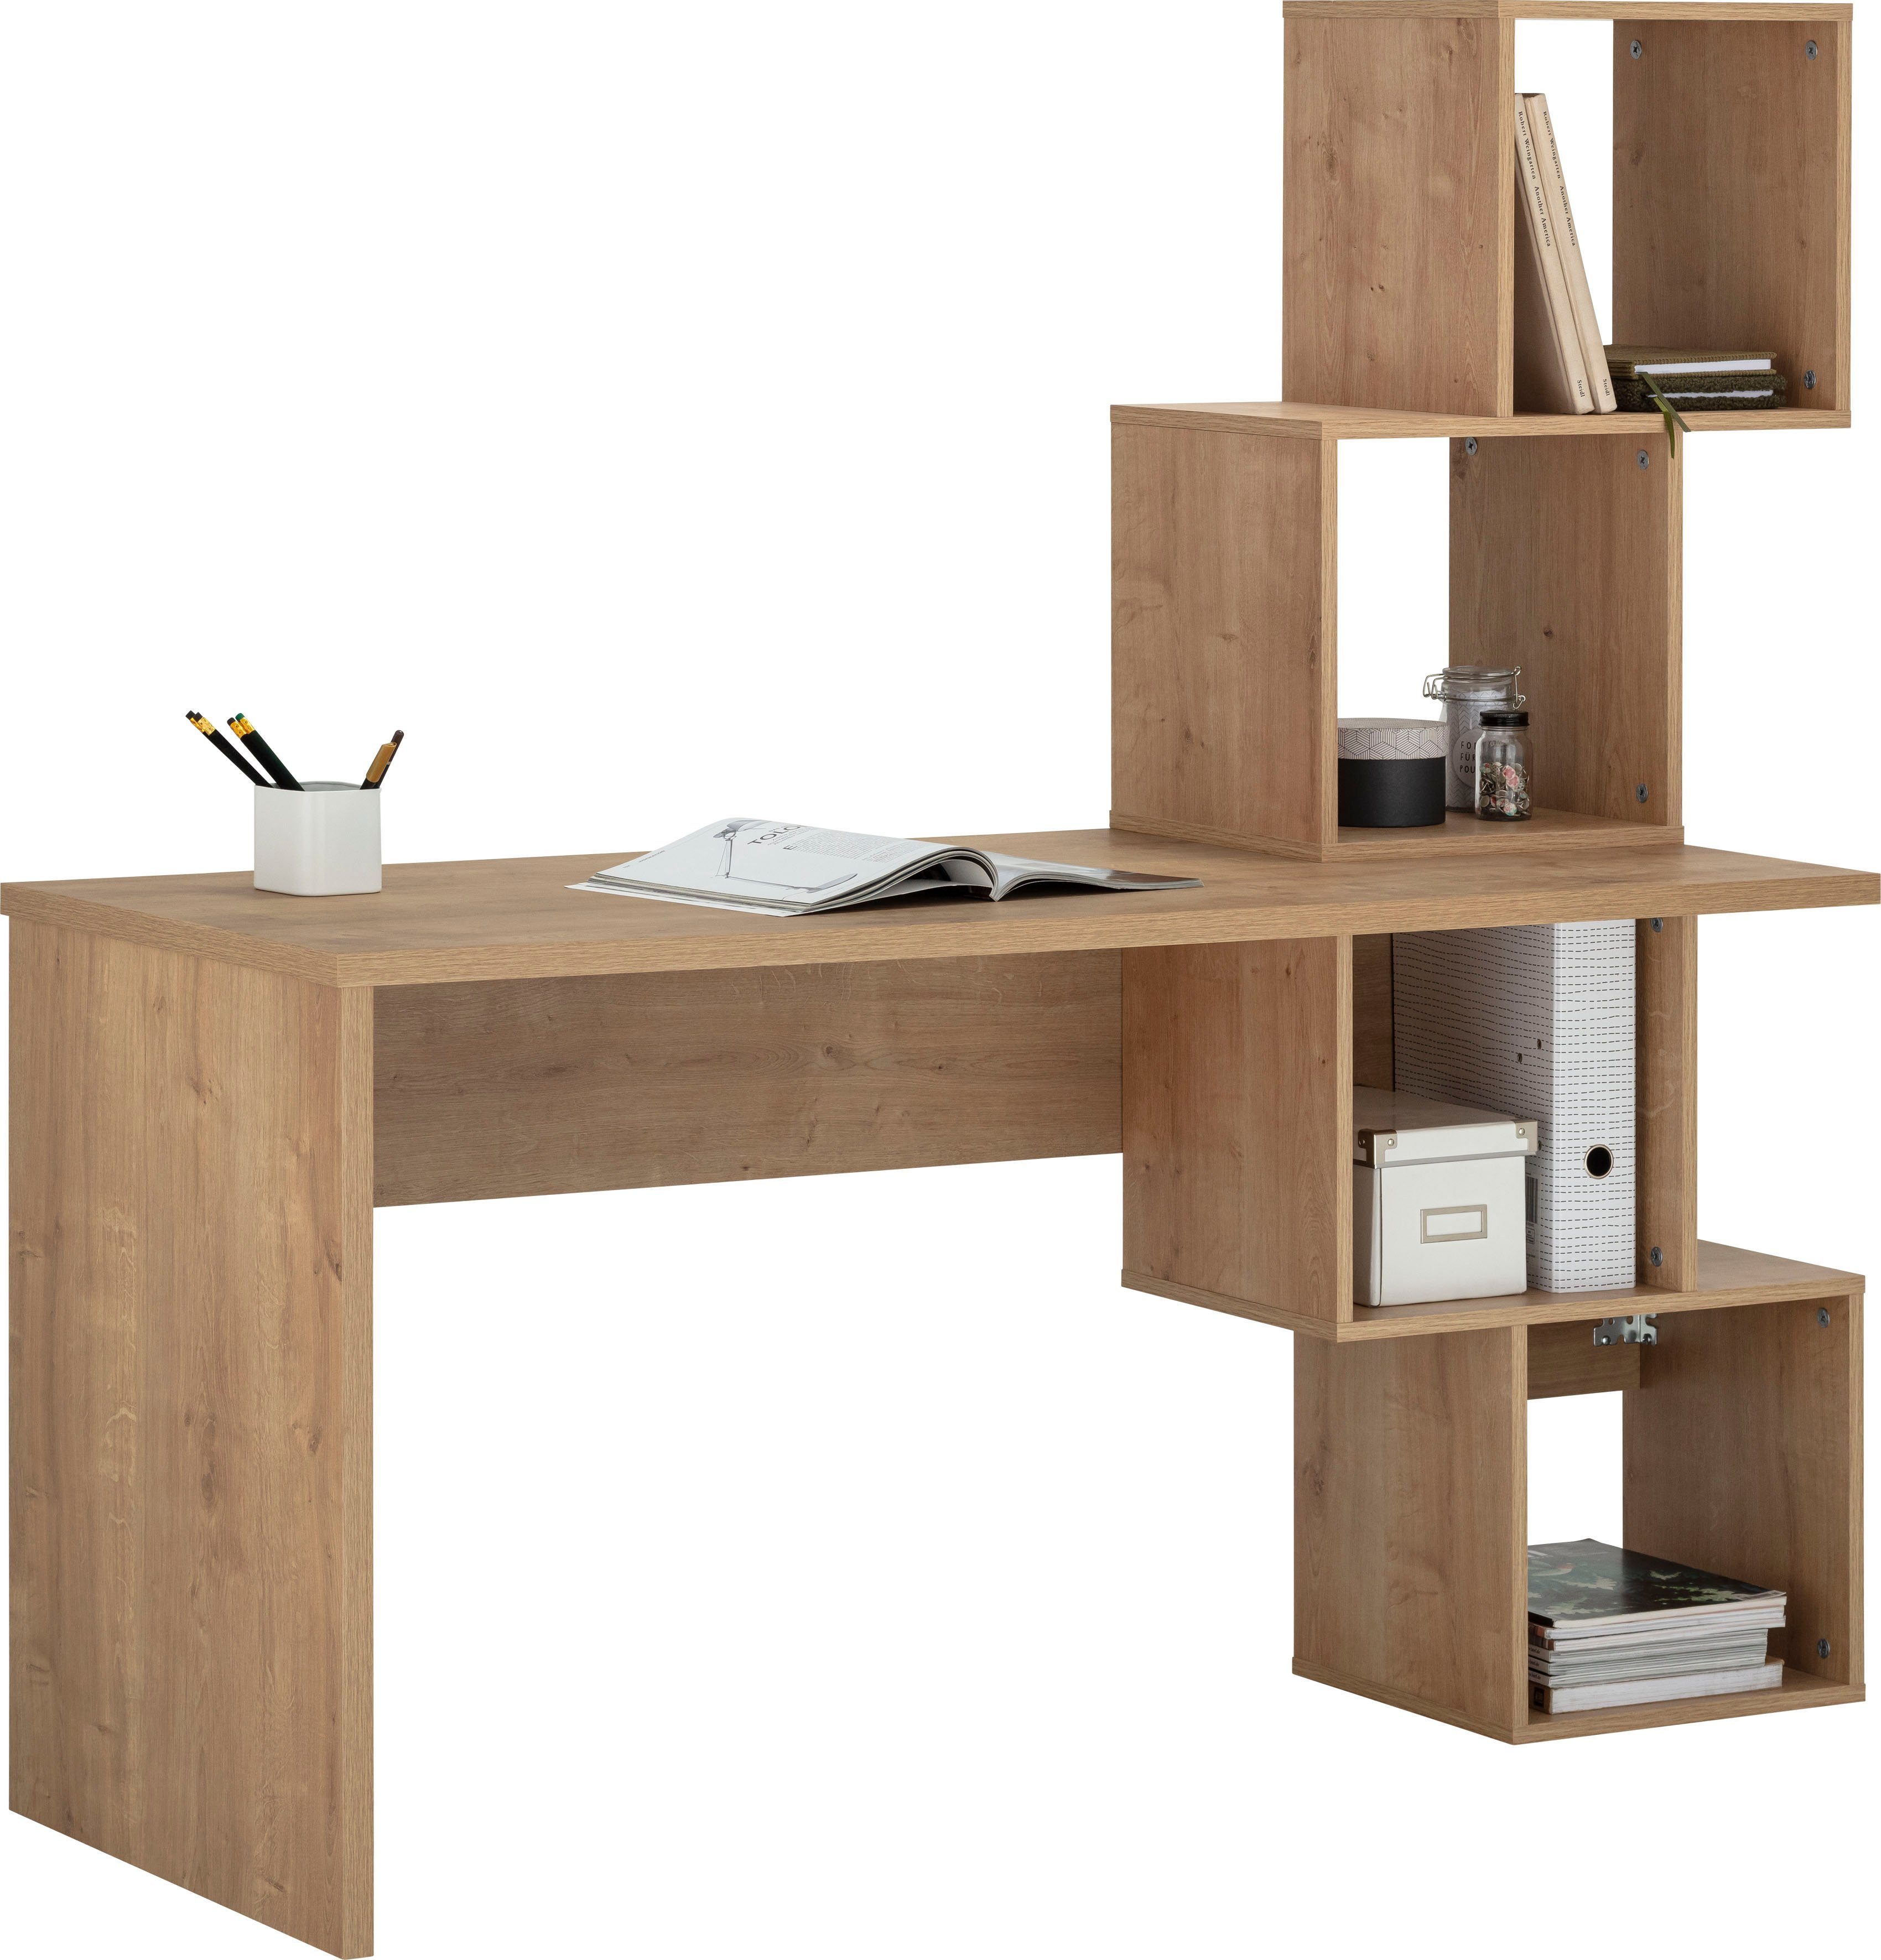 VOGL Möbelfabrik Schreibtisch Reggi, mit 4 offenen Fächern Eiche | Eiche | Eiche